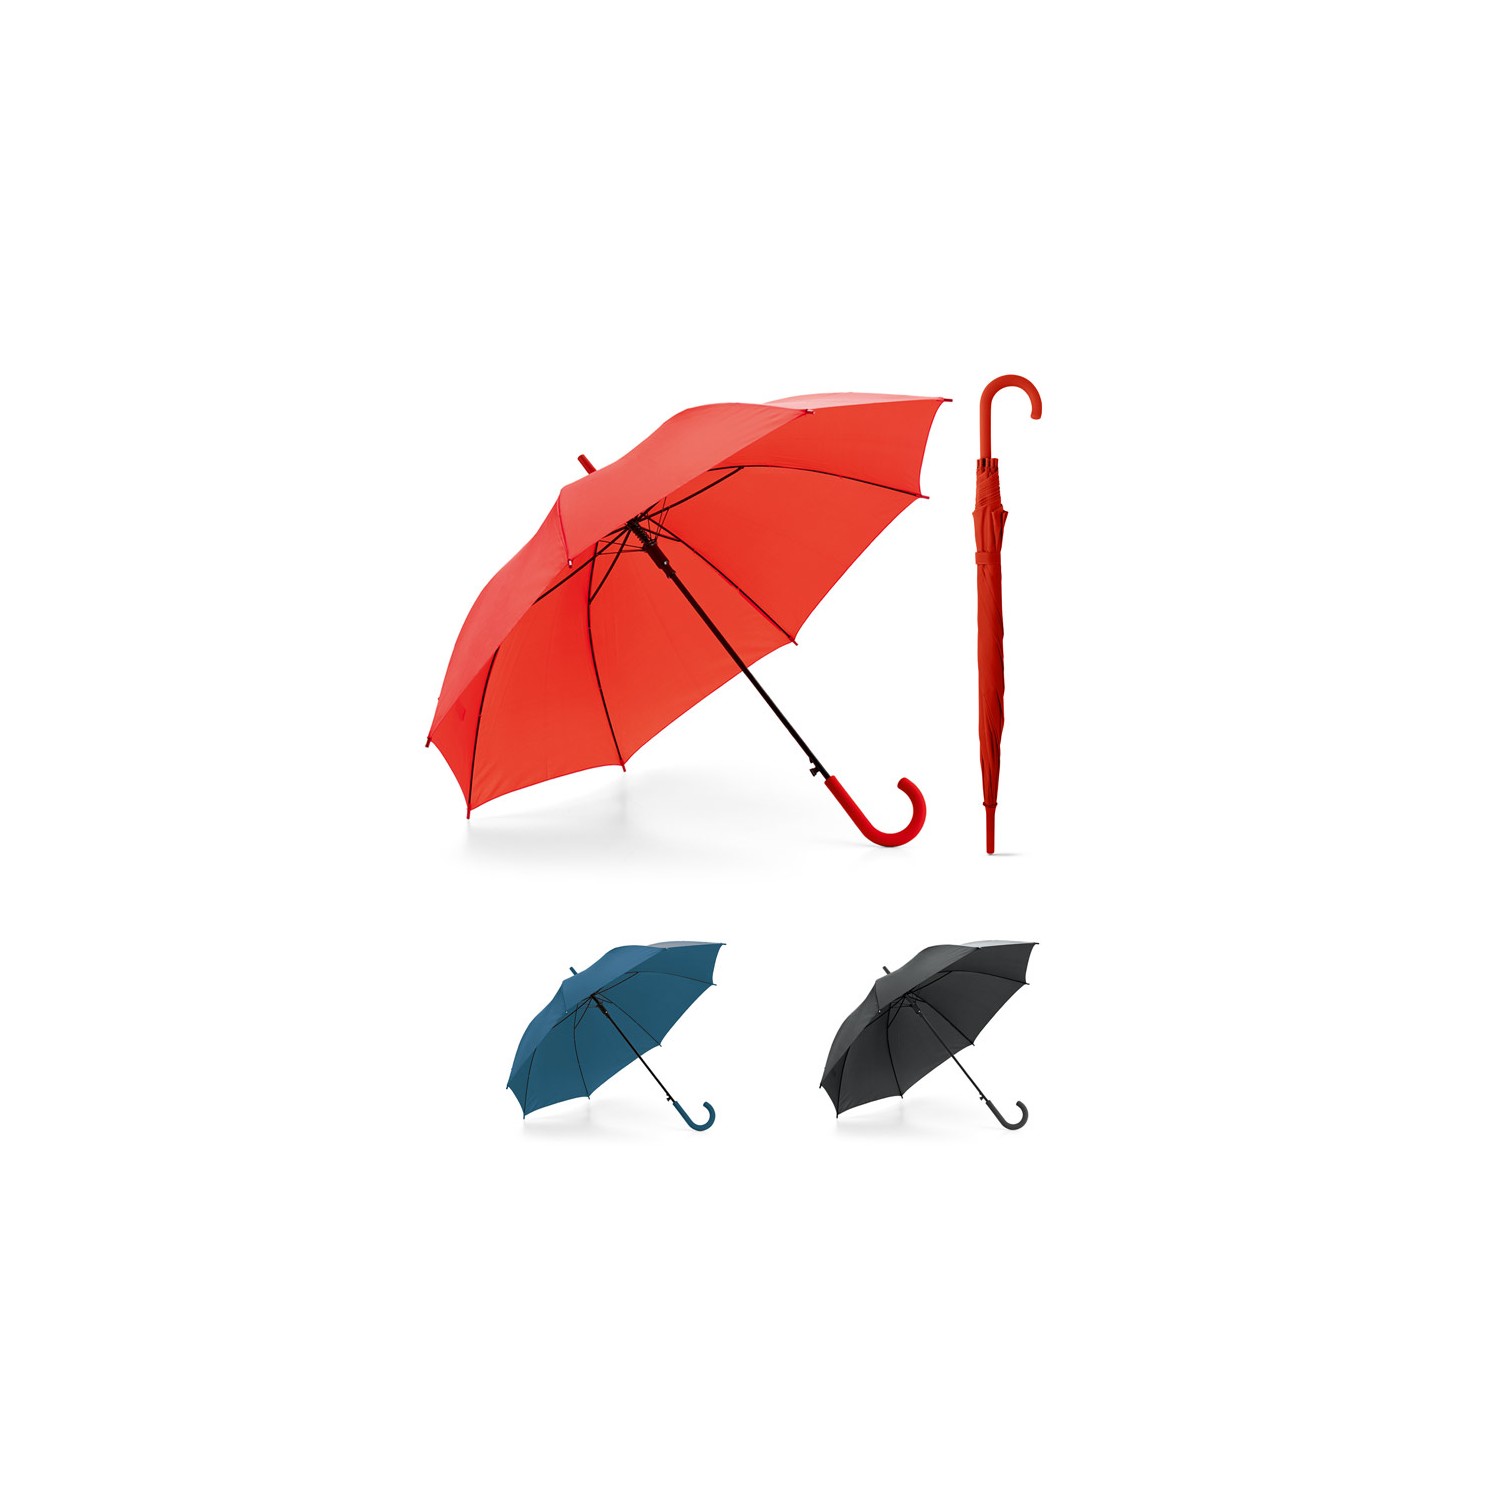 Guarda-chuva com abertura automática Michael